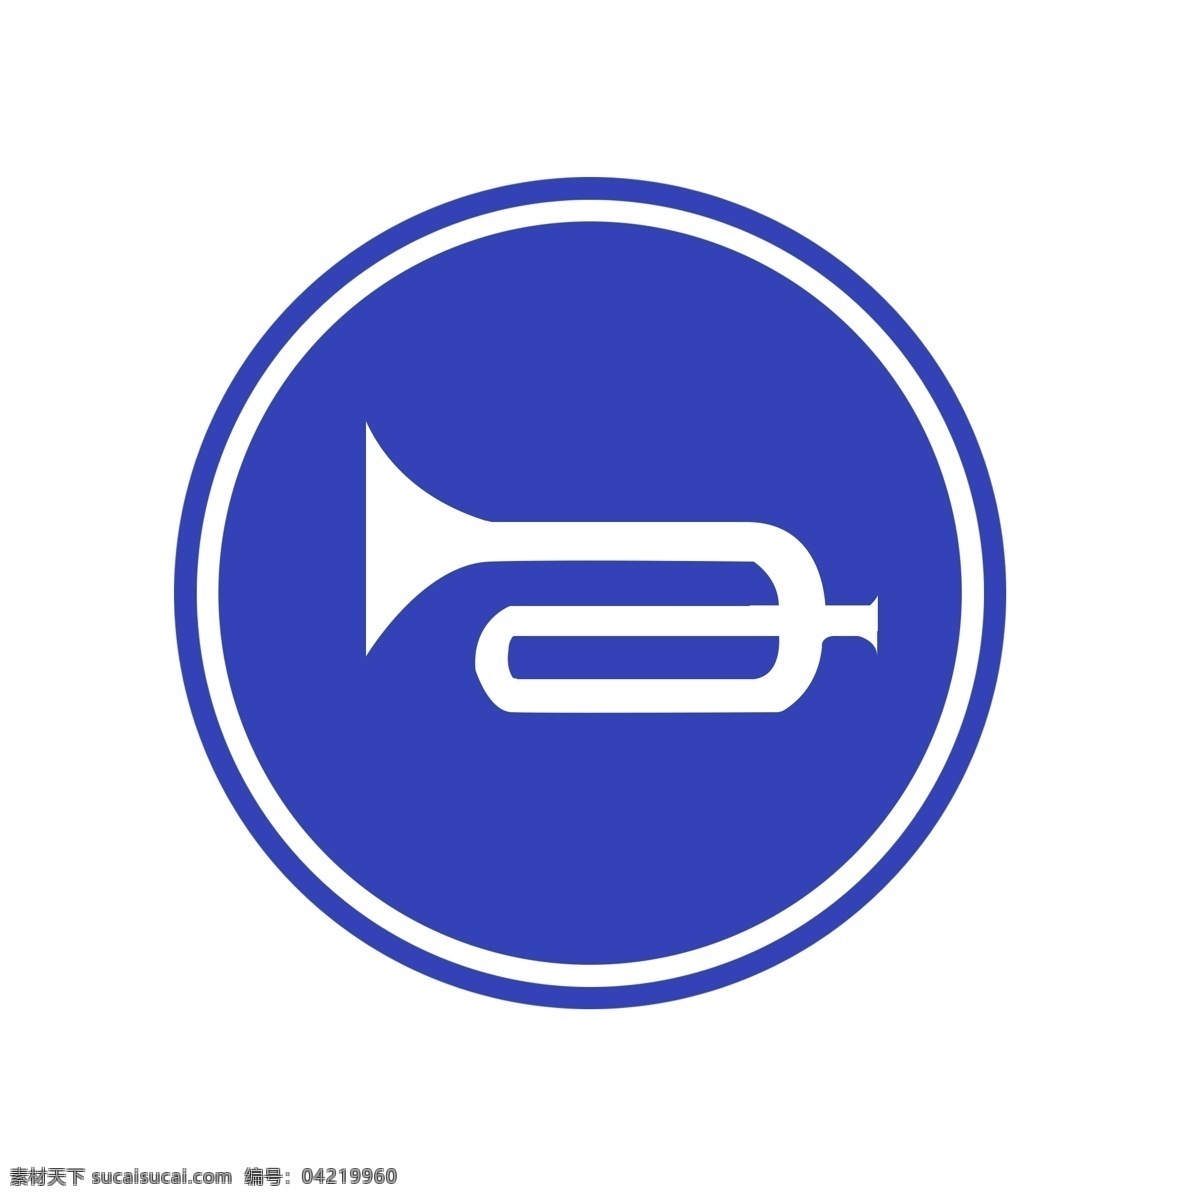 鸣 喇叭 图标 牌子 透明 底 蓝色 鸣喇叭 白色 圆形 公共 标示 可爱 男人 标志图标 公共标识标志